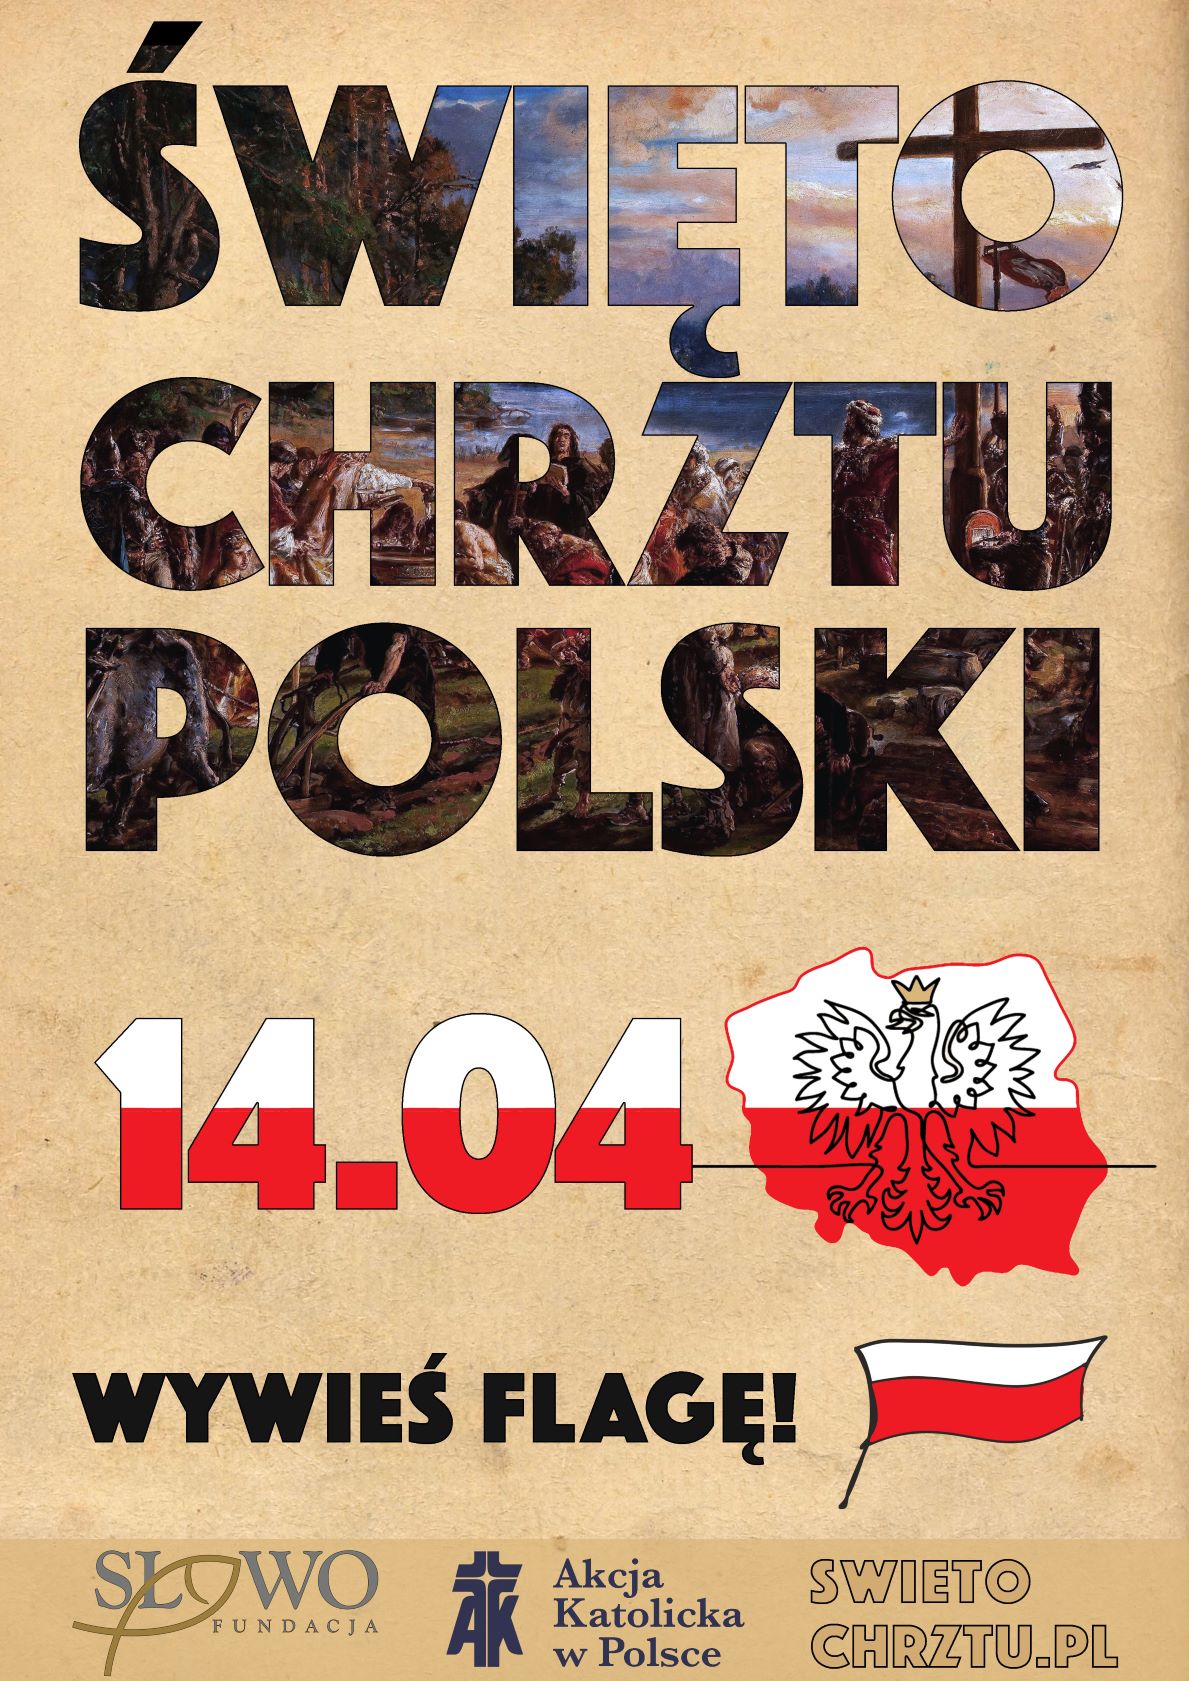 plakat informujący o Święcie Chrztu Polski oraz zachęcający do wywieszenia flagi z tej okazji